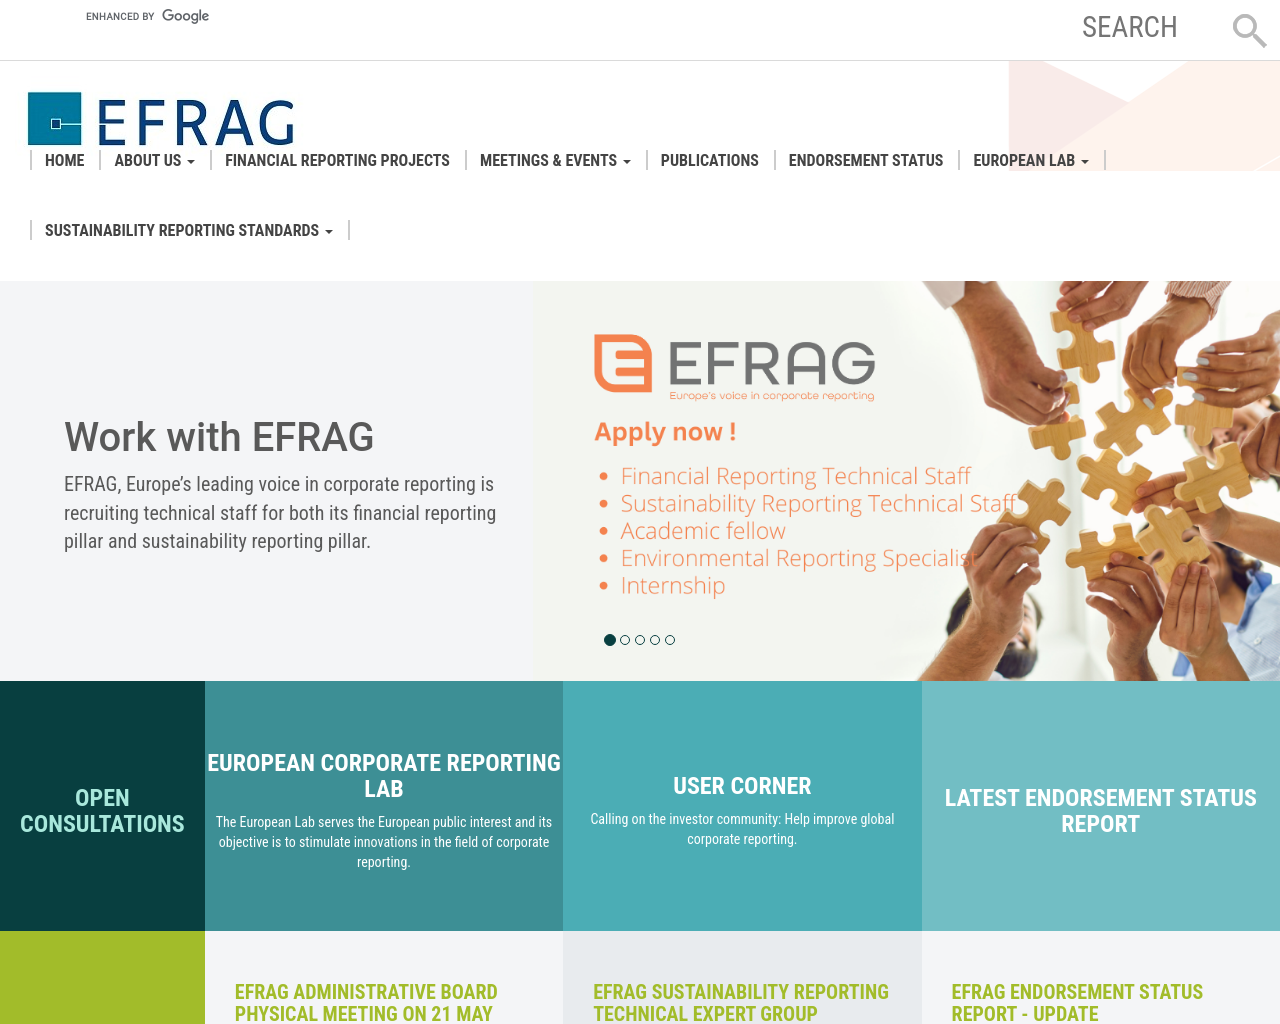 efrag.org